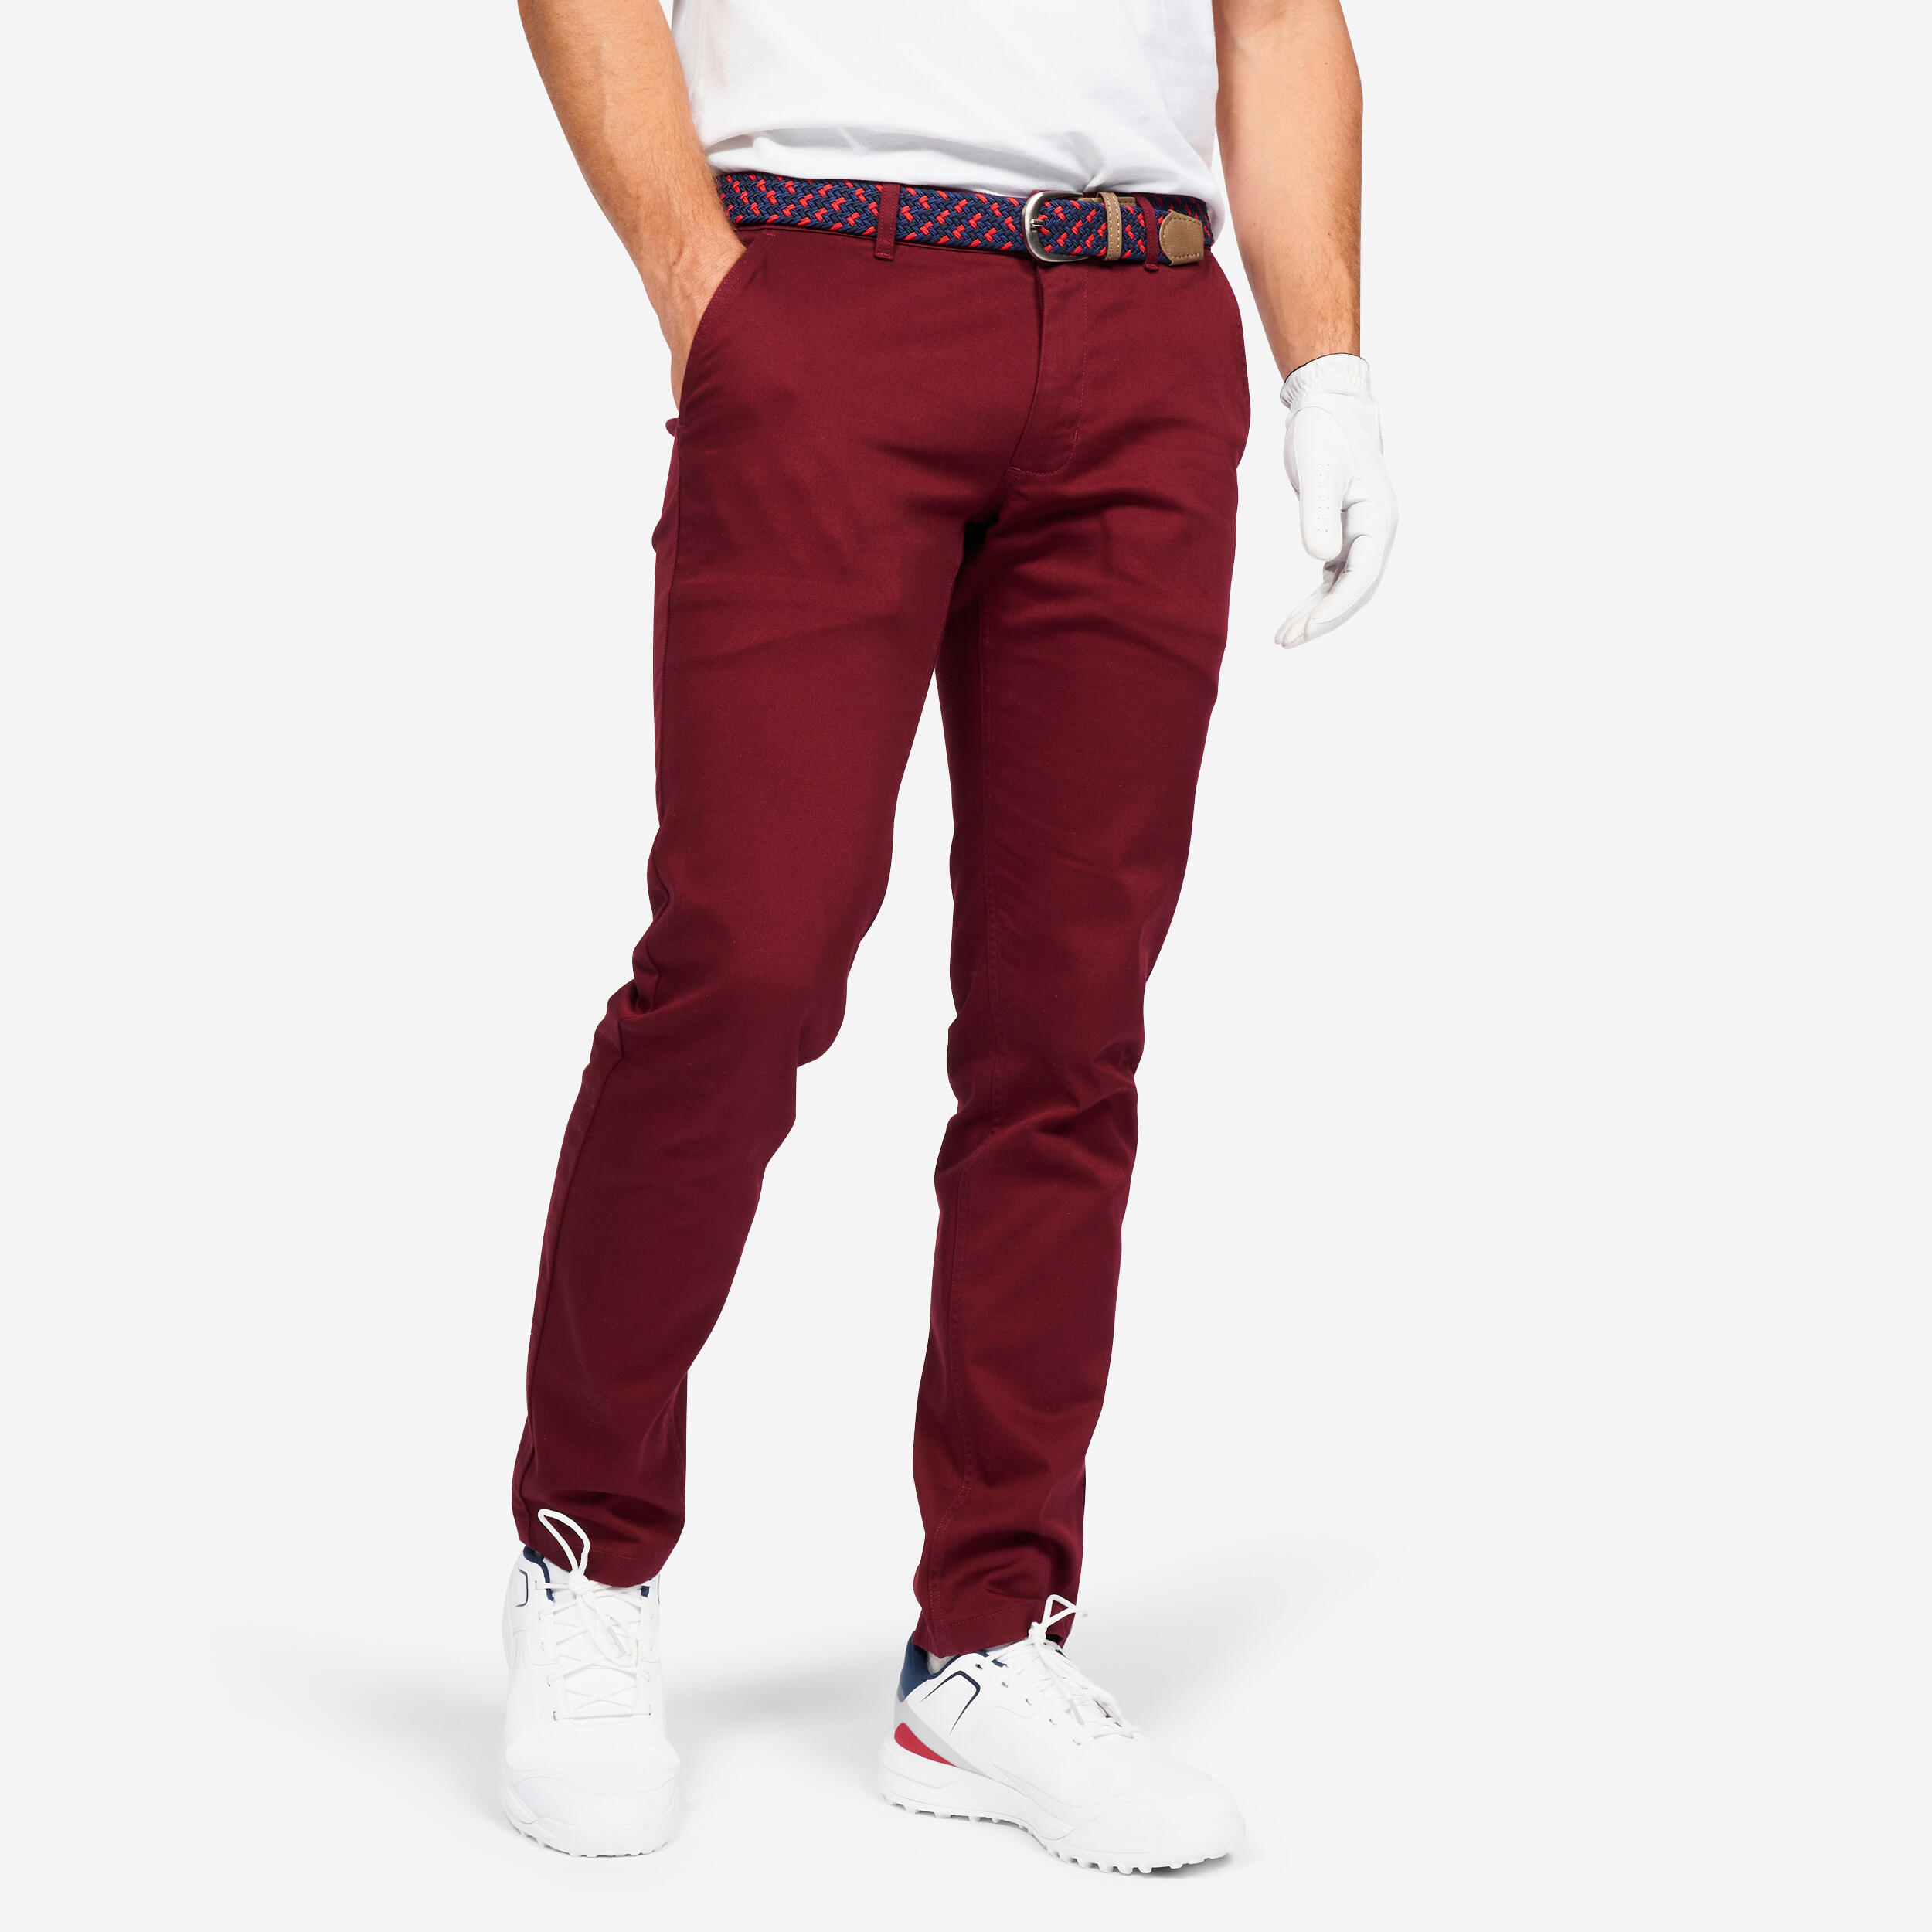 Pantalon Golf Mw500 Rosu Inchis Barbati